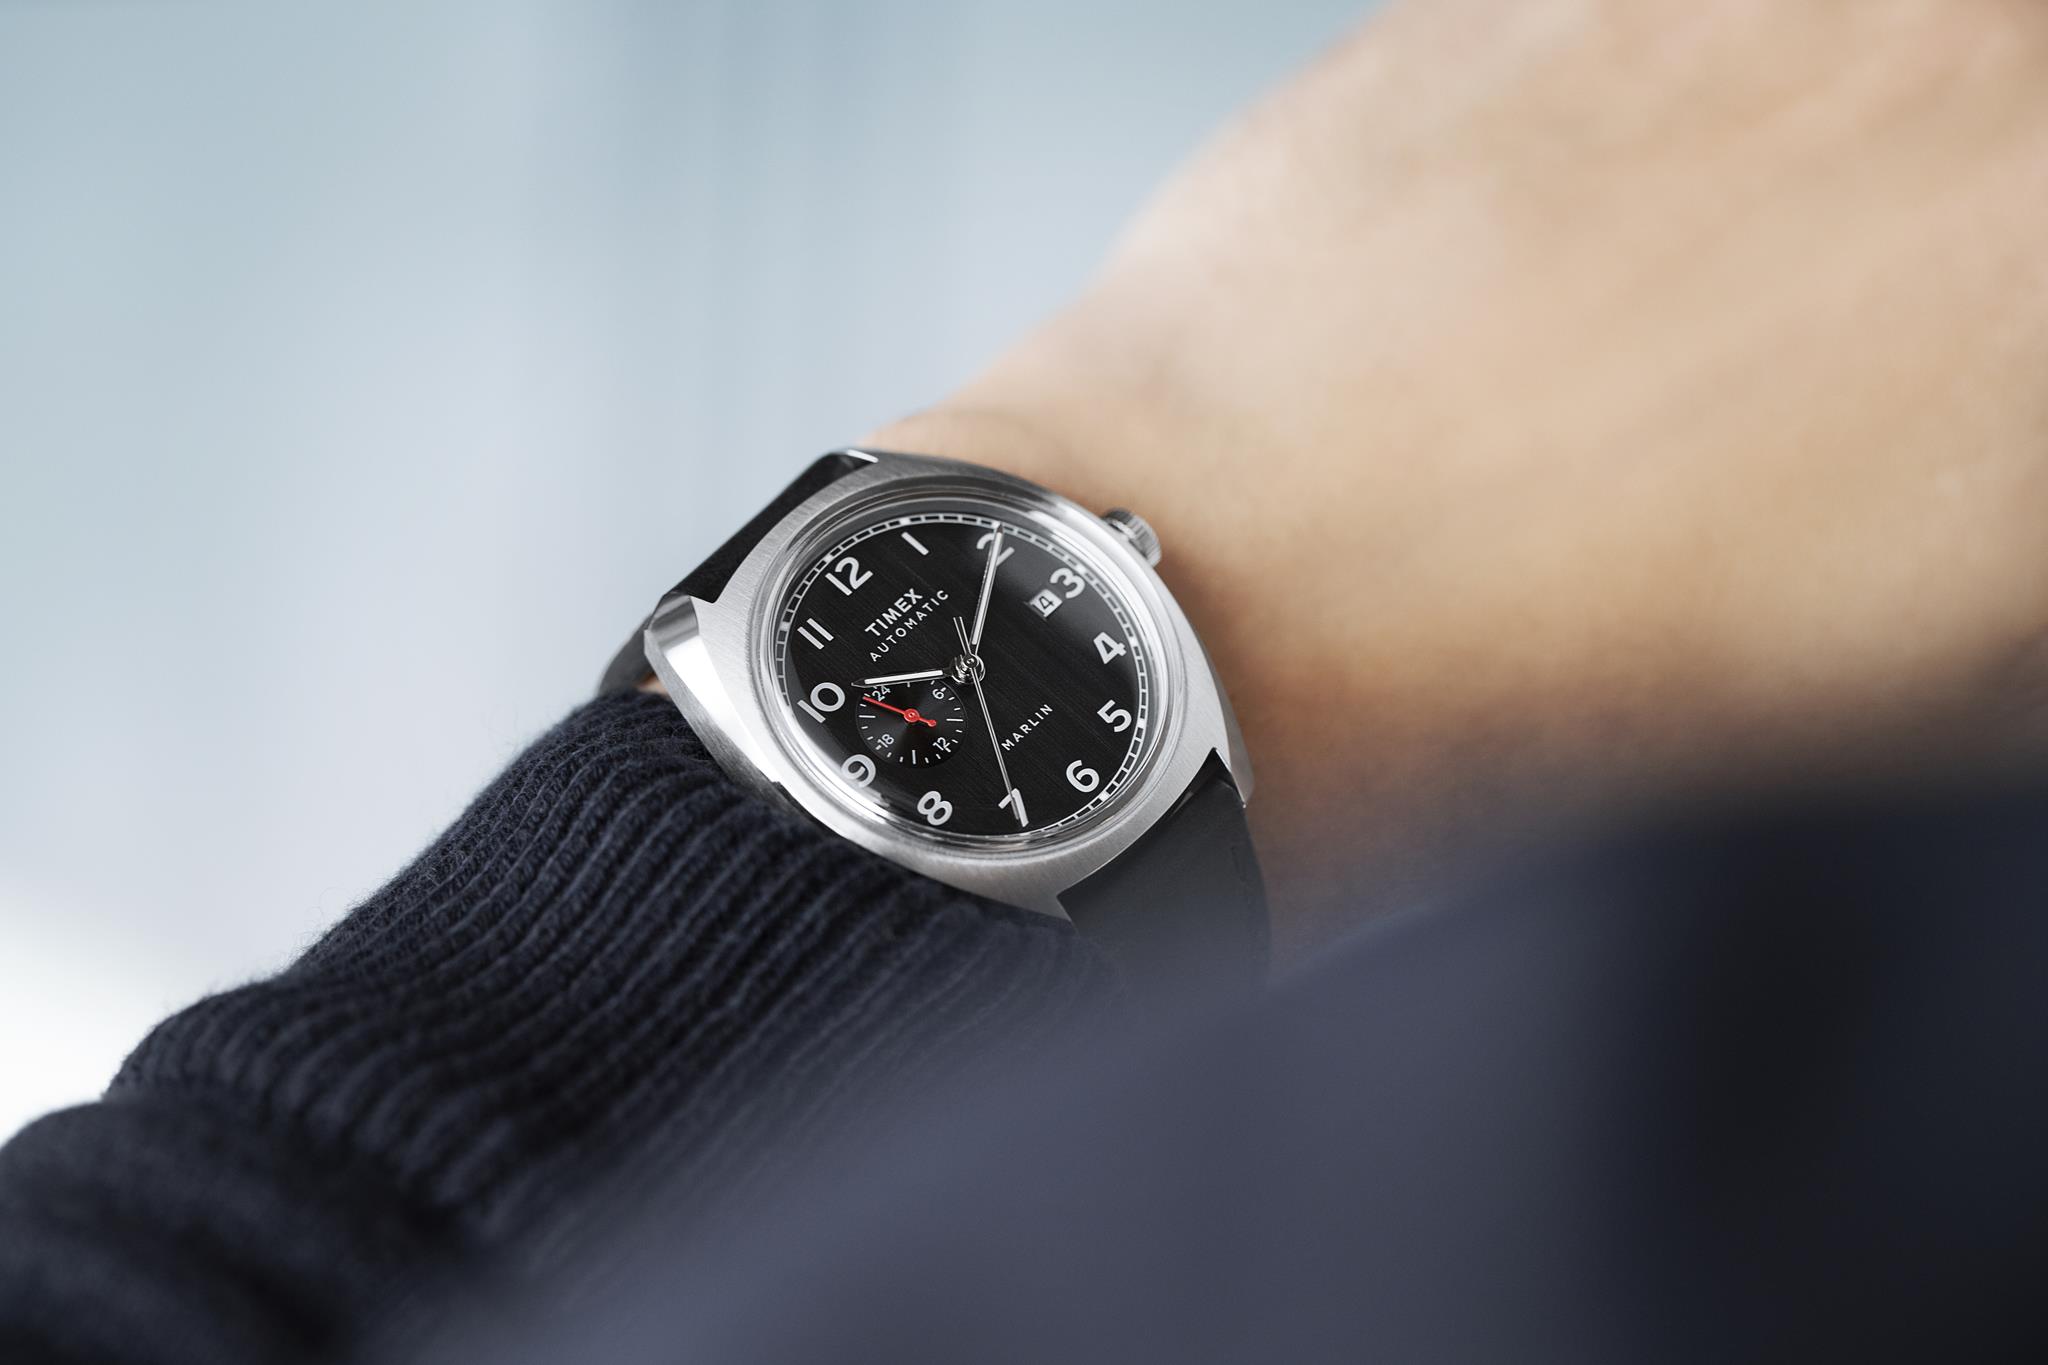 Timex orologi: il nuovo modello Marlin Automatic - Fashion Times